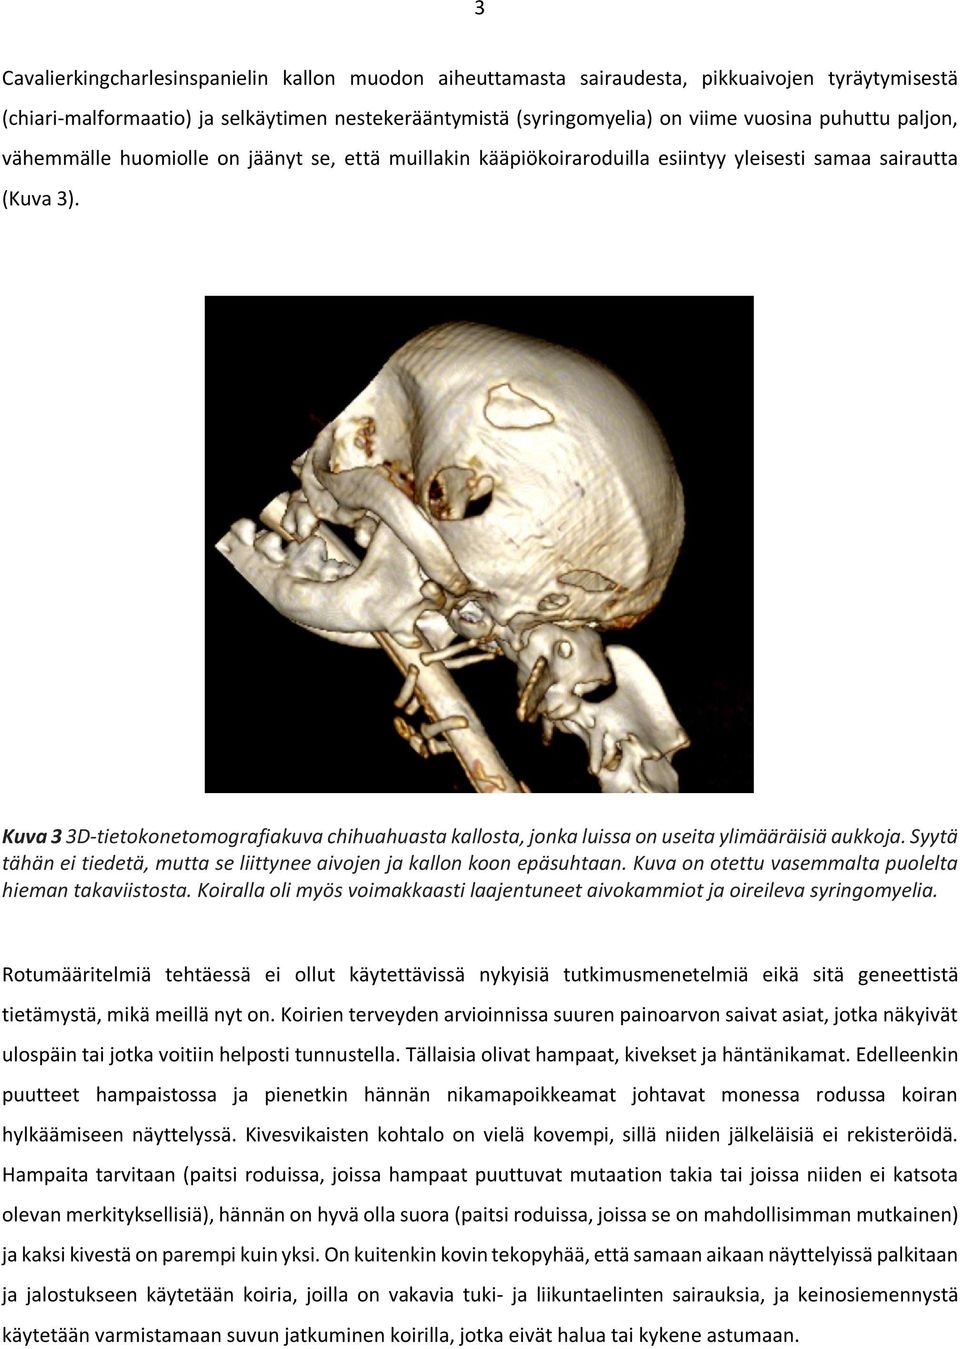 Kuva 3 3D-tietokonetomografiakuva chihuahuasta kallosta, jonka luissa on useita ylimääräisiä aukkoja. Syytä tähän ei tiedetä, mutta se liittynee aivojen ja kallon koon epäsuhtaan.